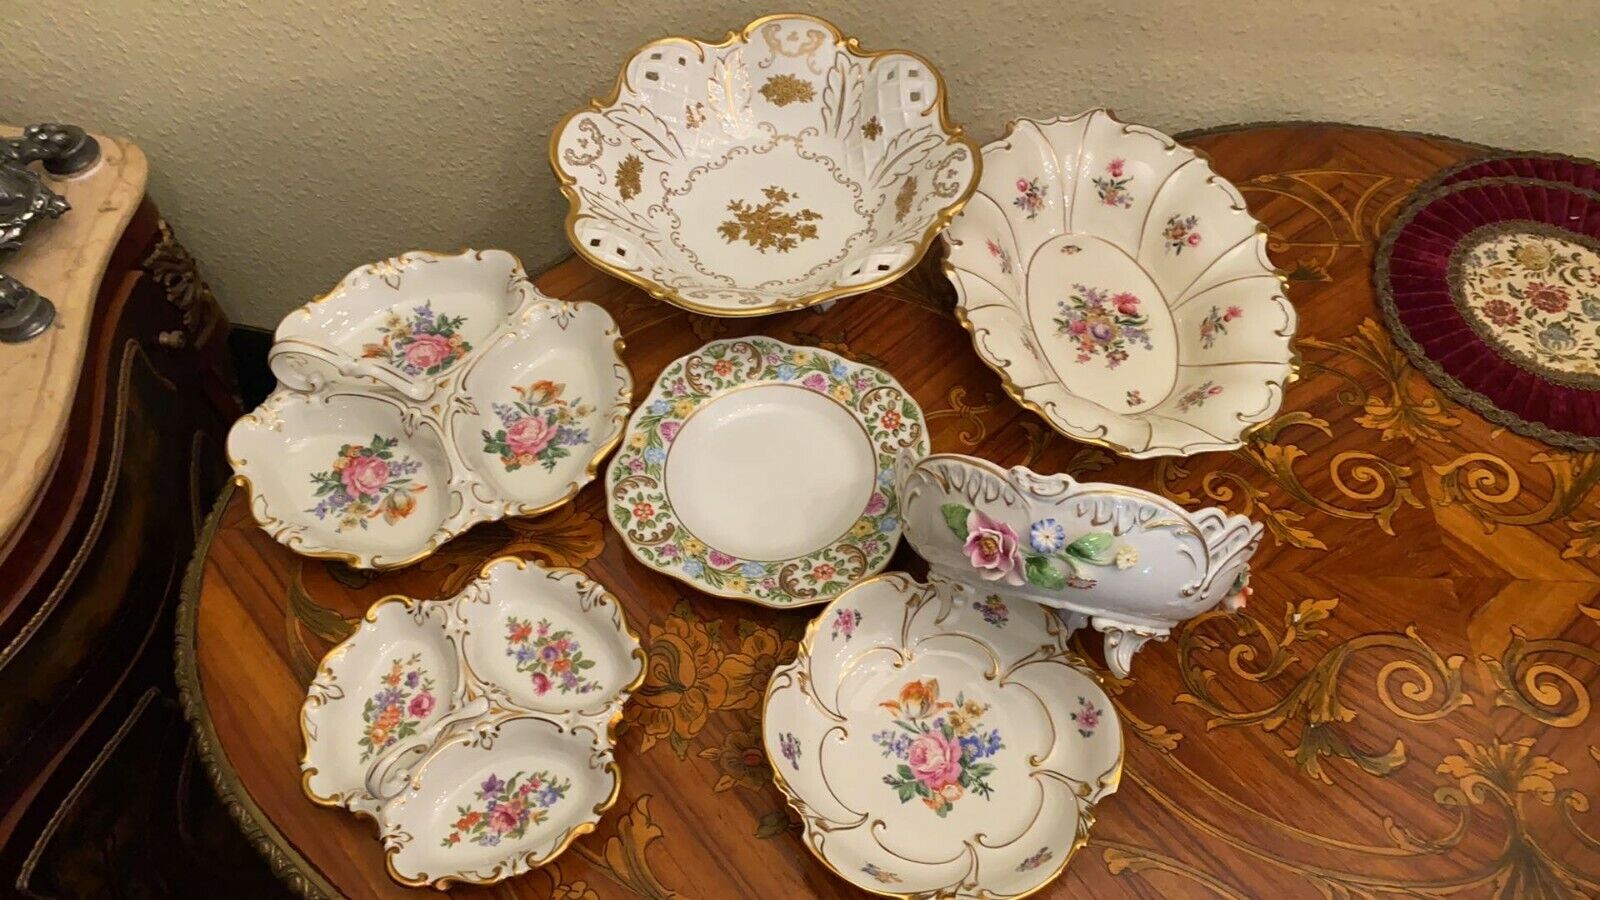 7 Antique Vintage Jlmenau Porcelain Plates & Bowls